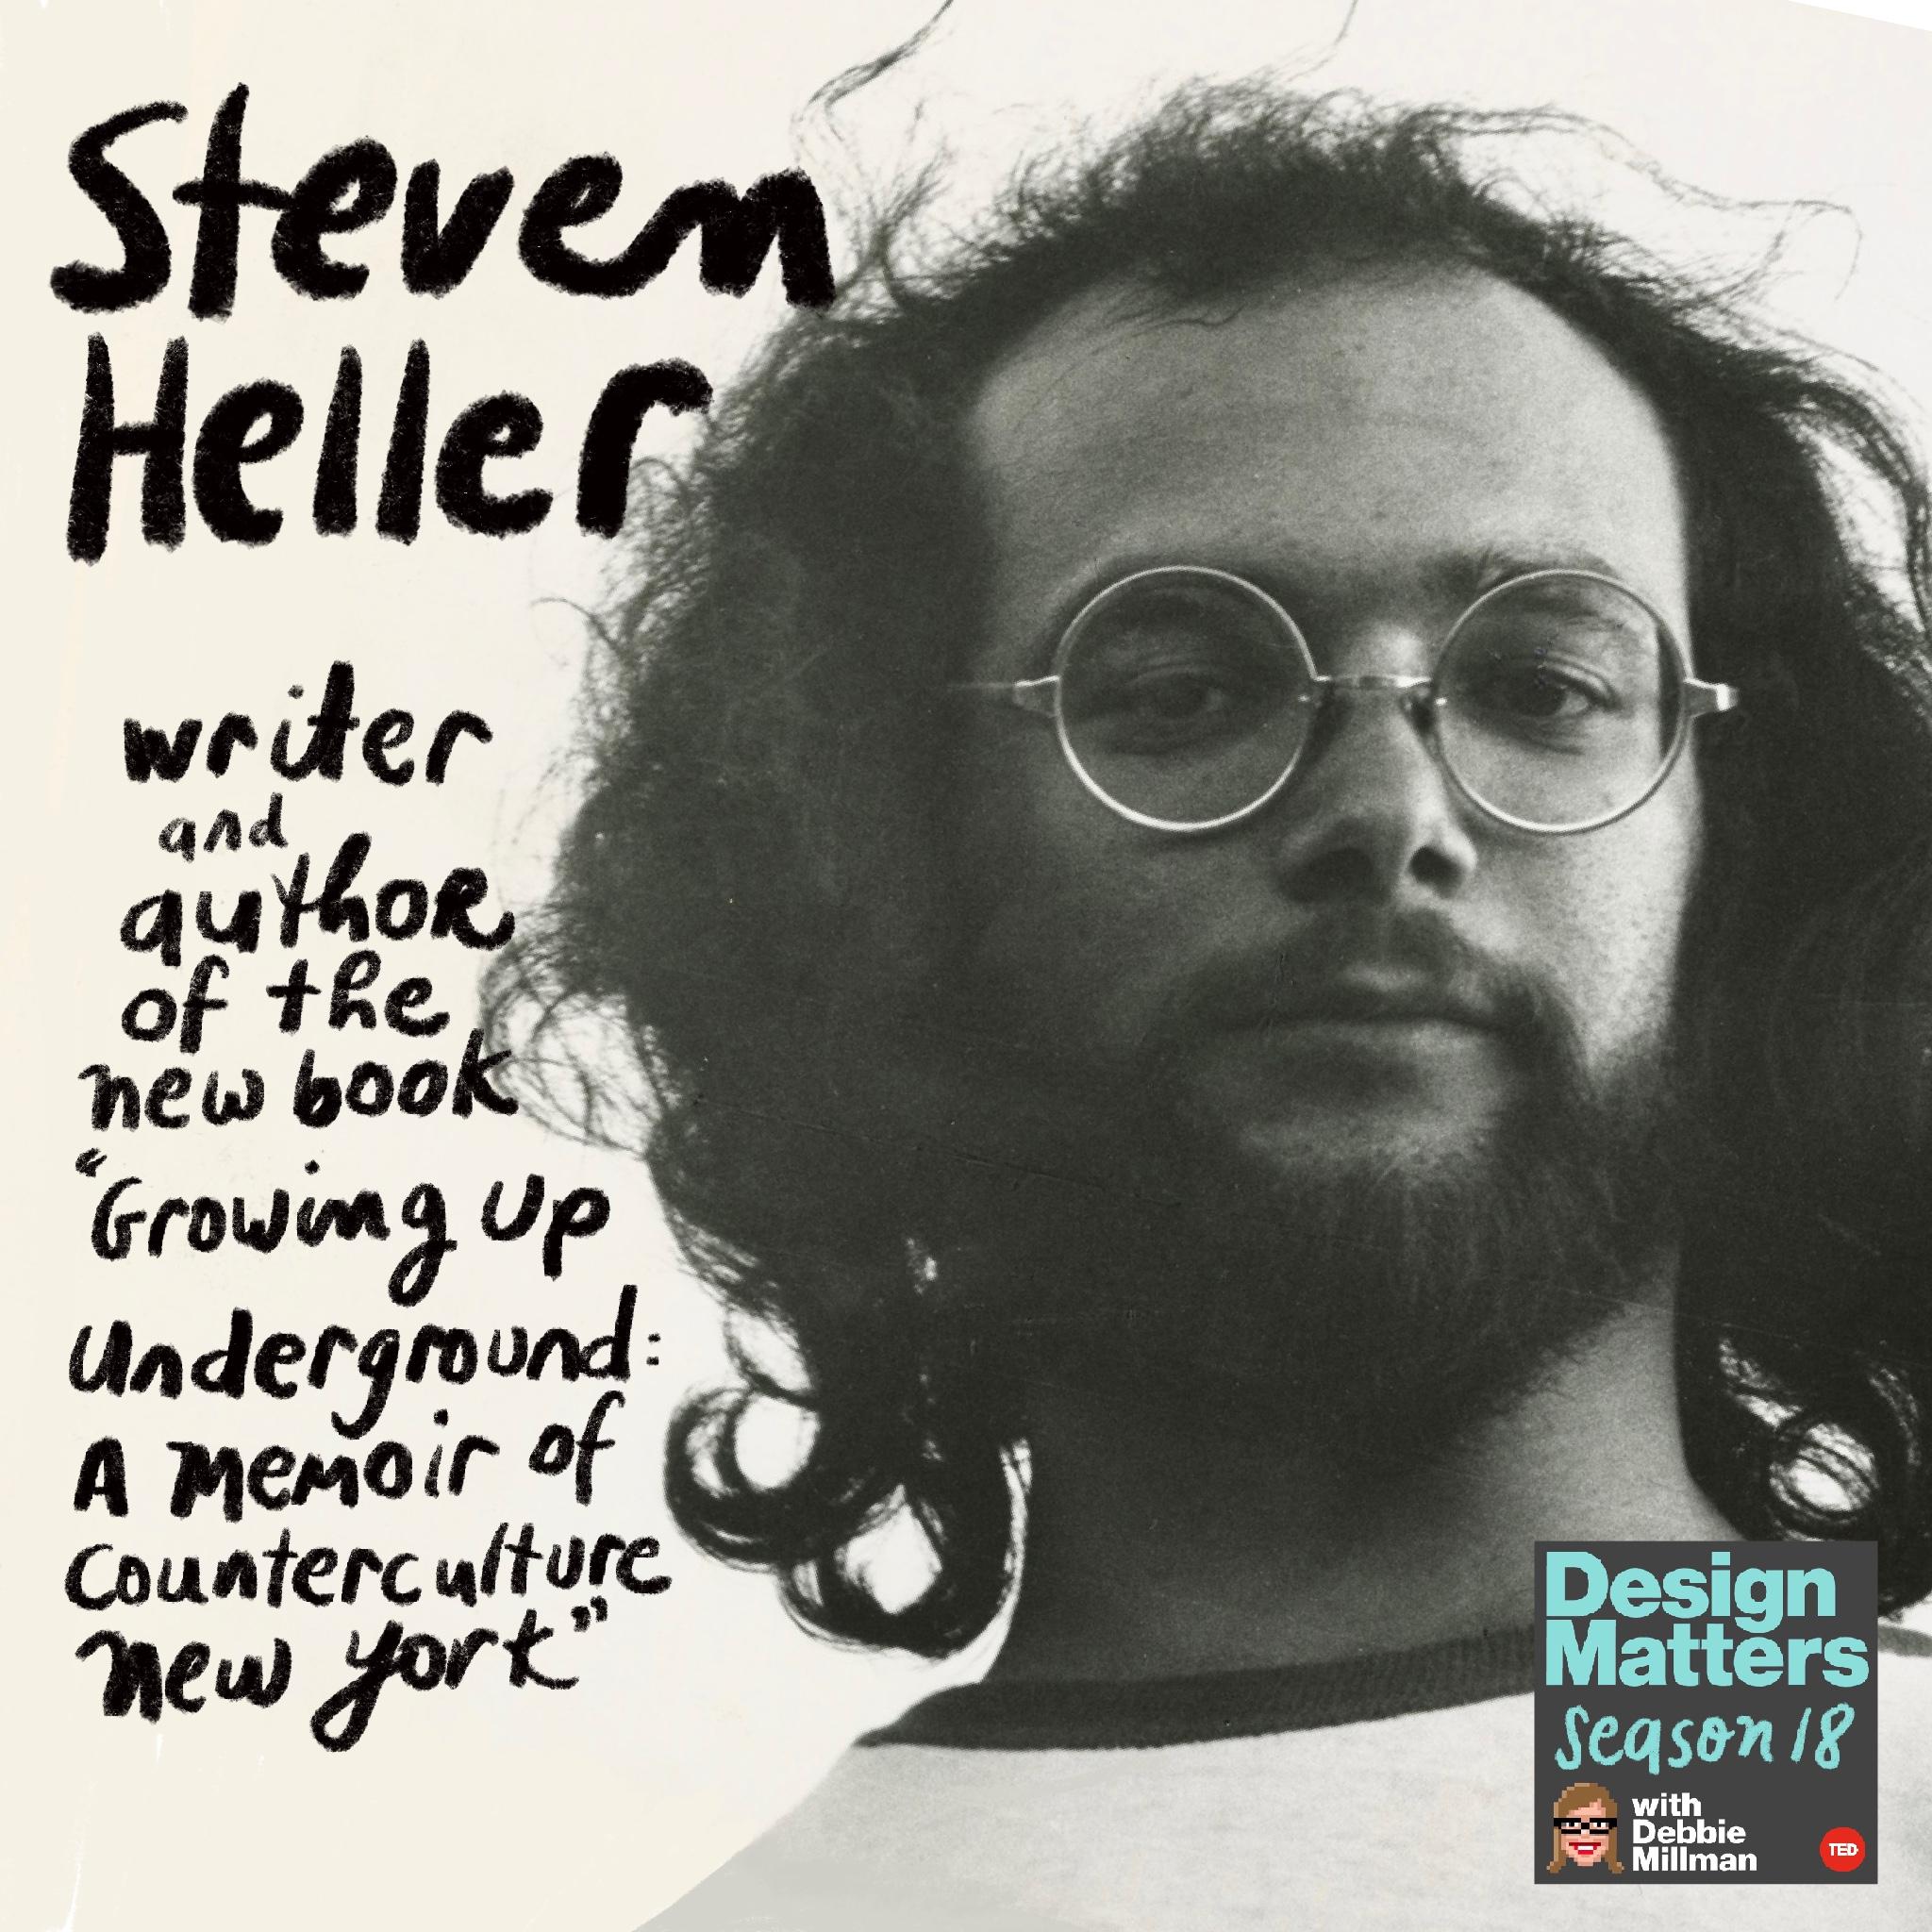 Thumbnail for "Steven Heller".